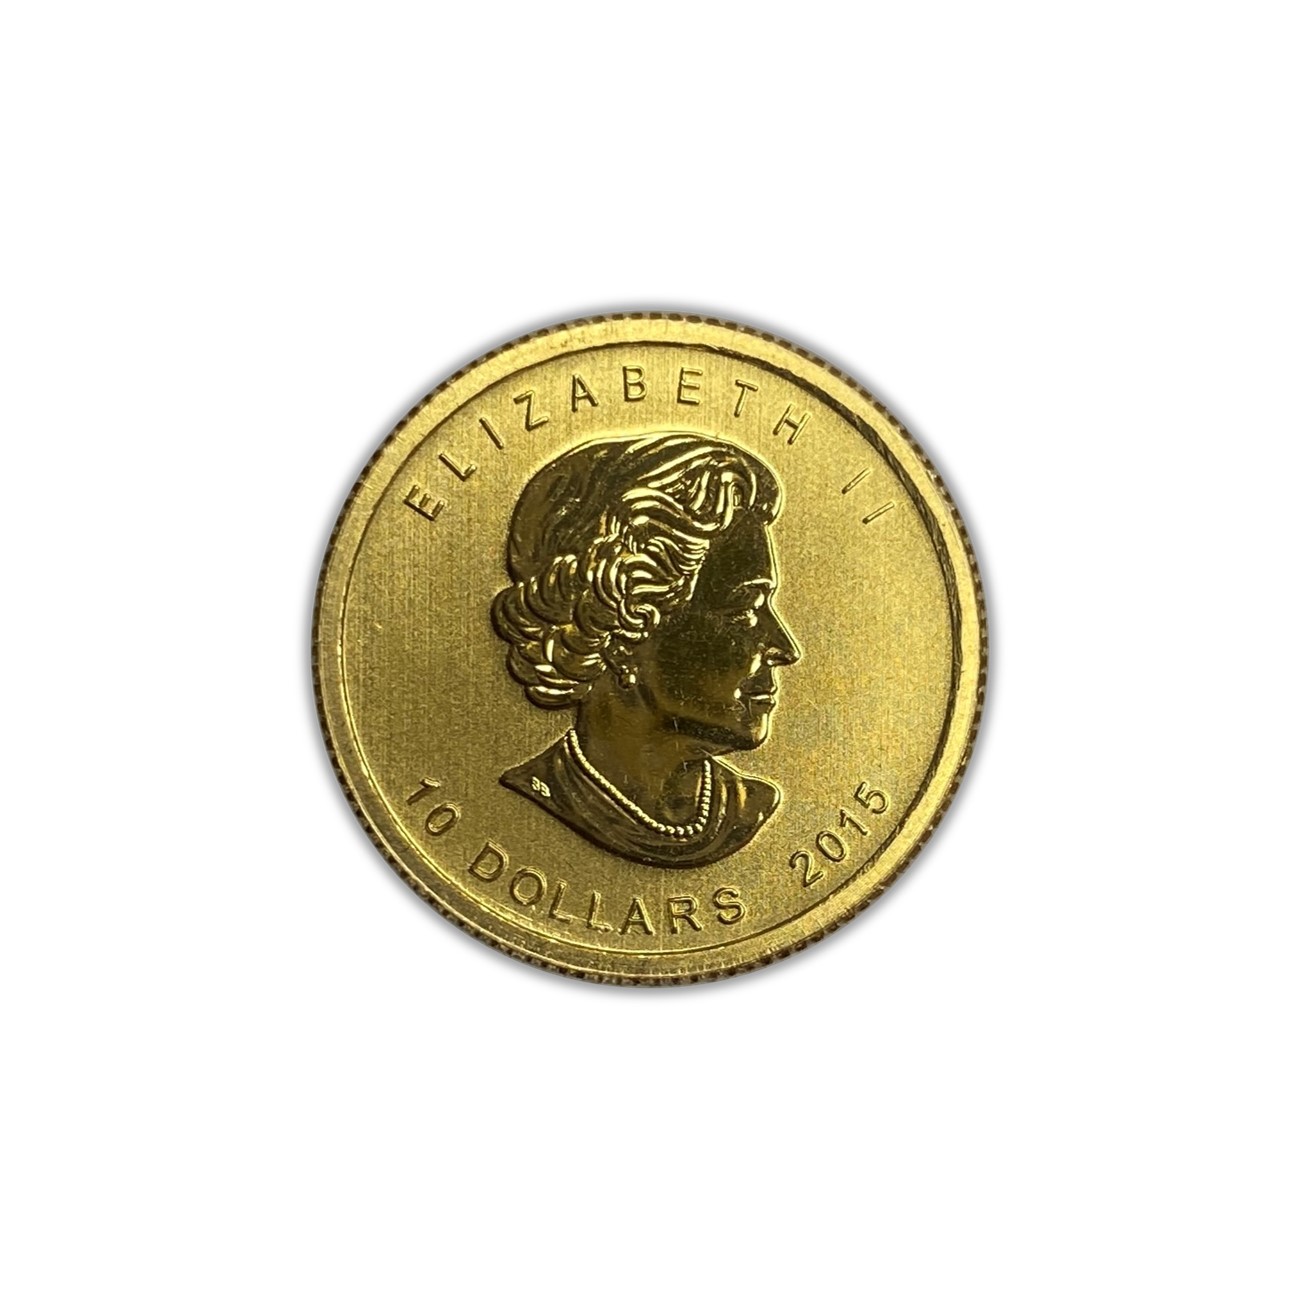 2015 Canadian 1/4 oz Polar Bear and Cub Gold Coin